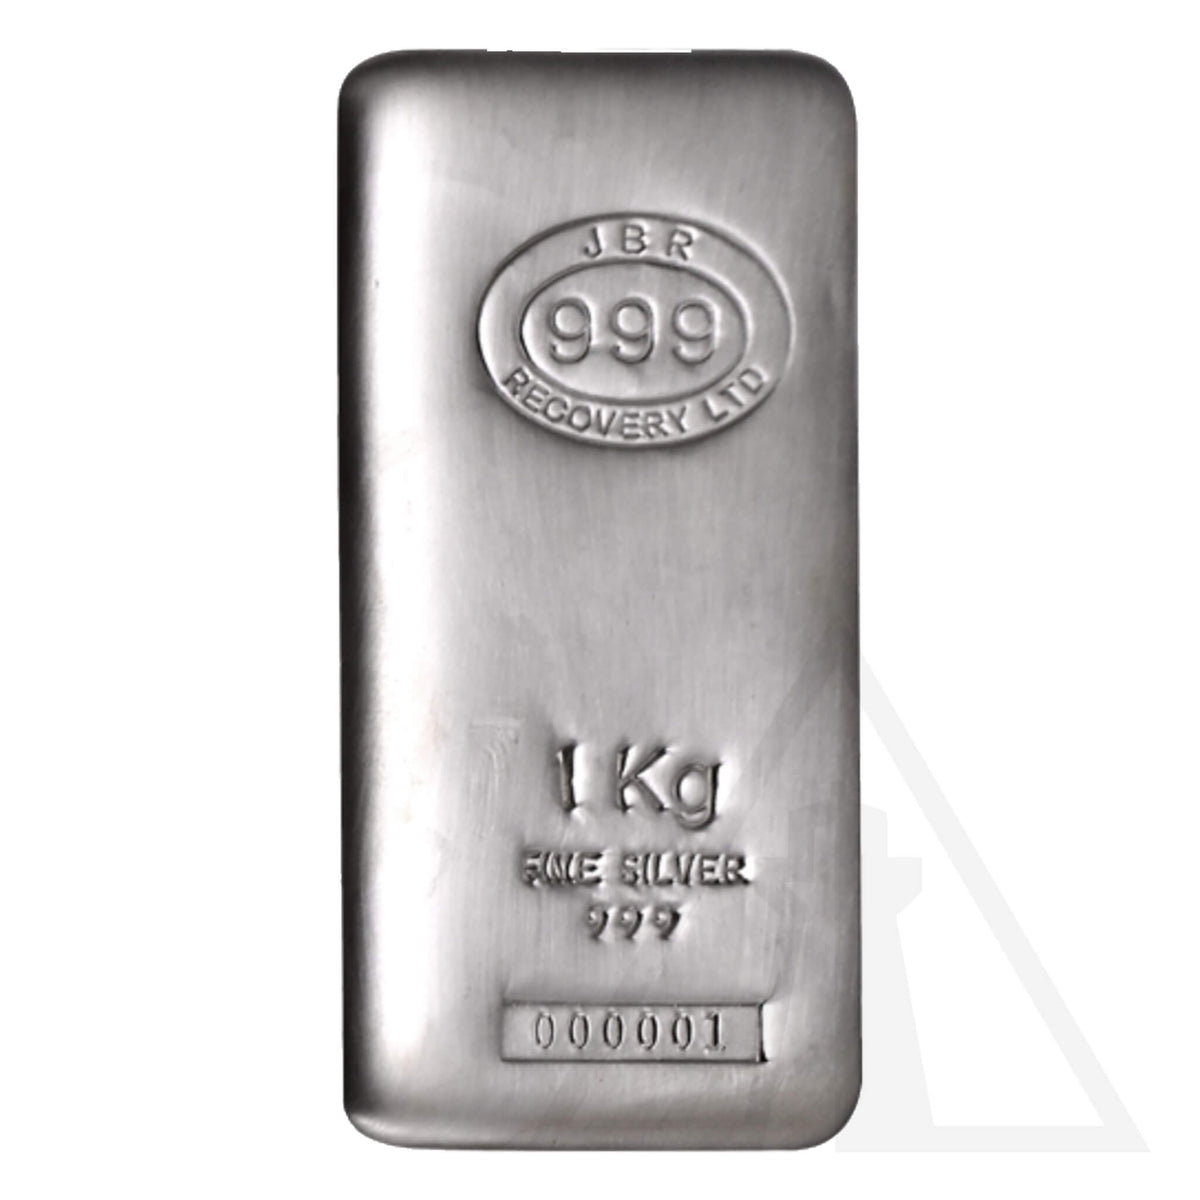 1 kg JBR Silver Bar